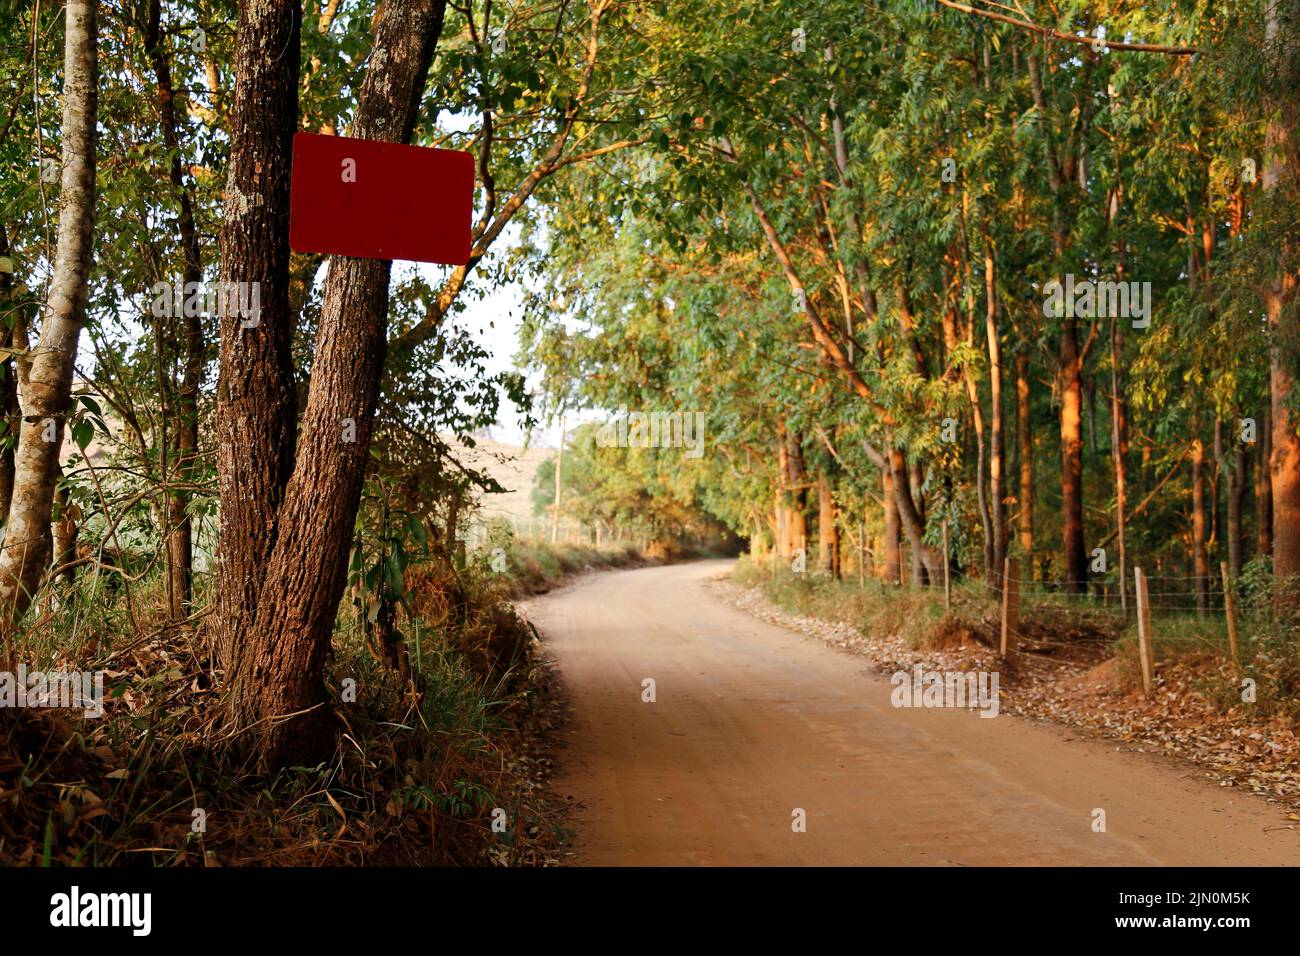 signo rojo en blanco anclado al árbol durante el día al aire libre Foto de stock